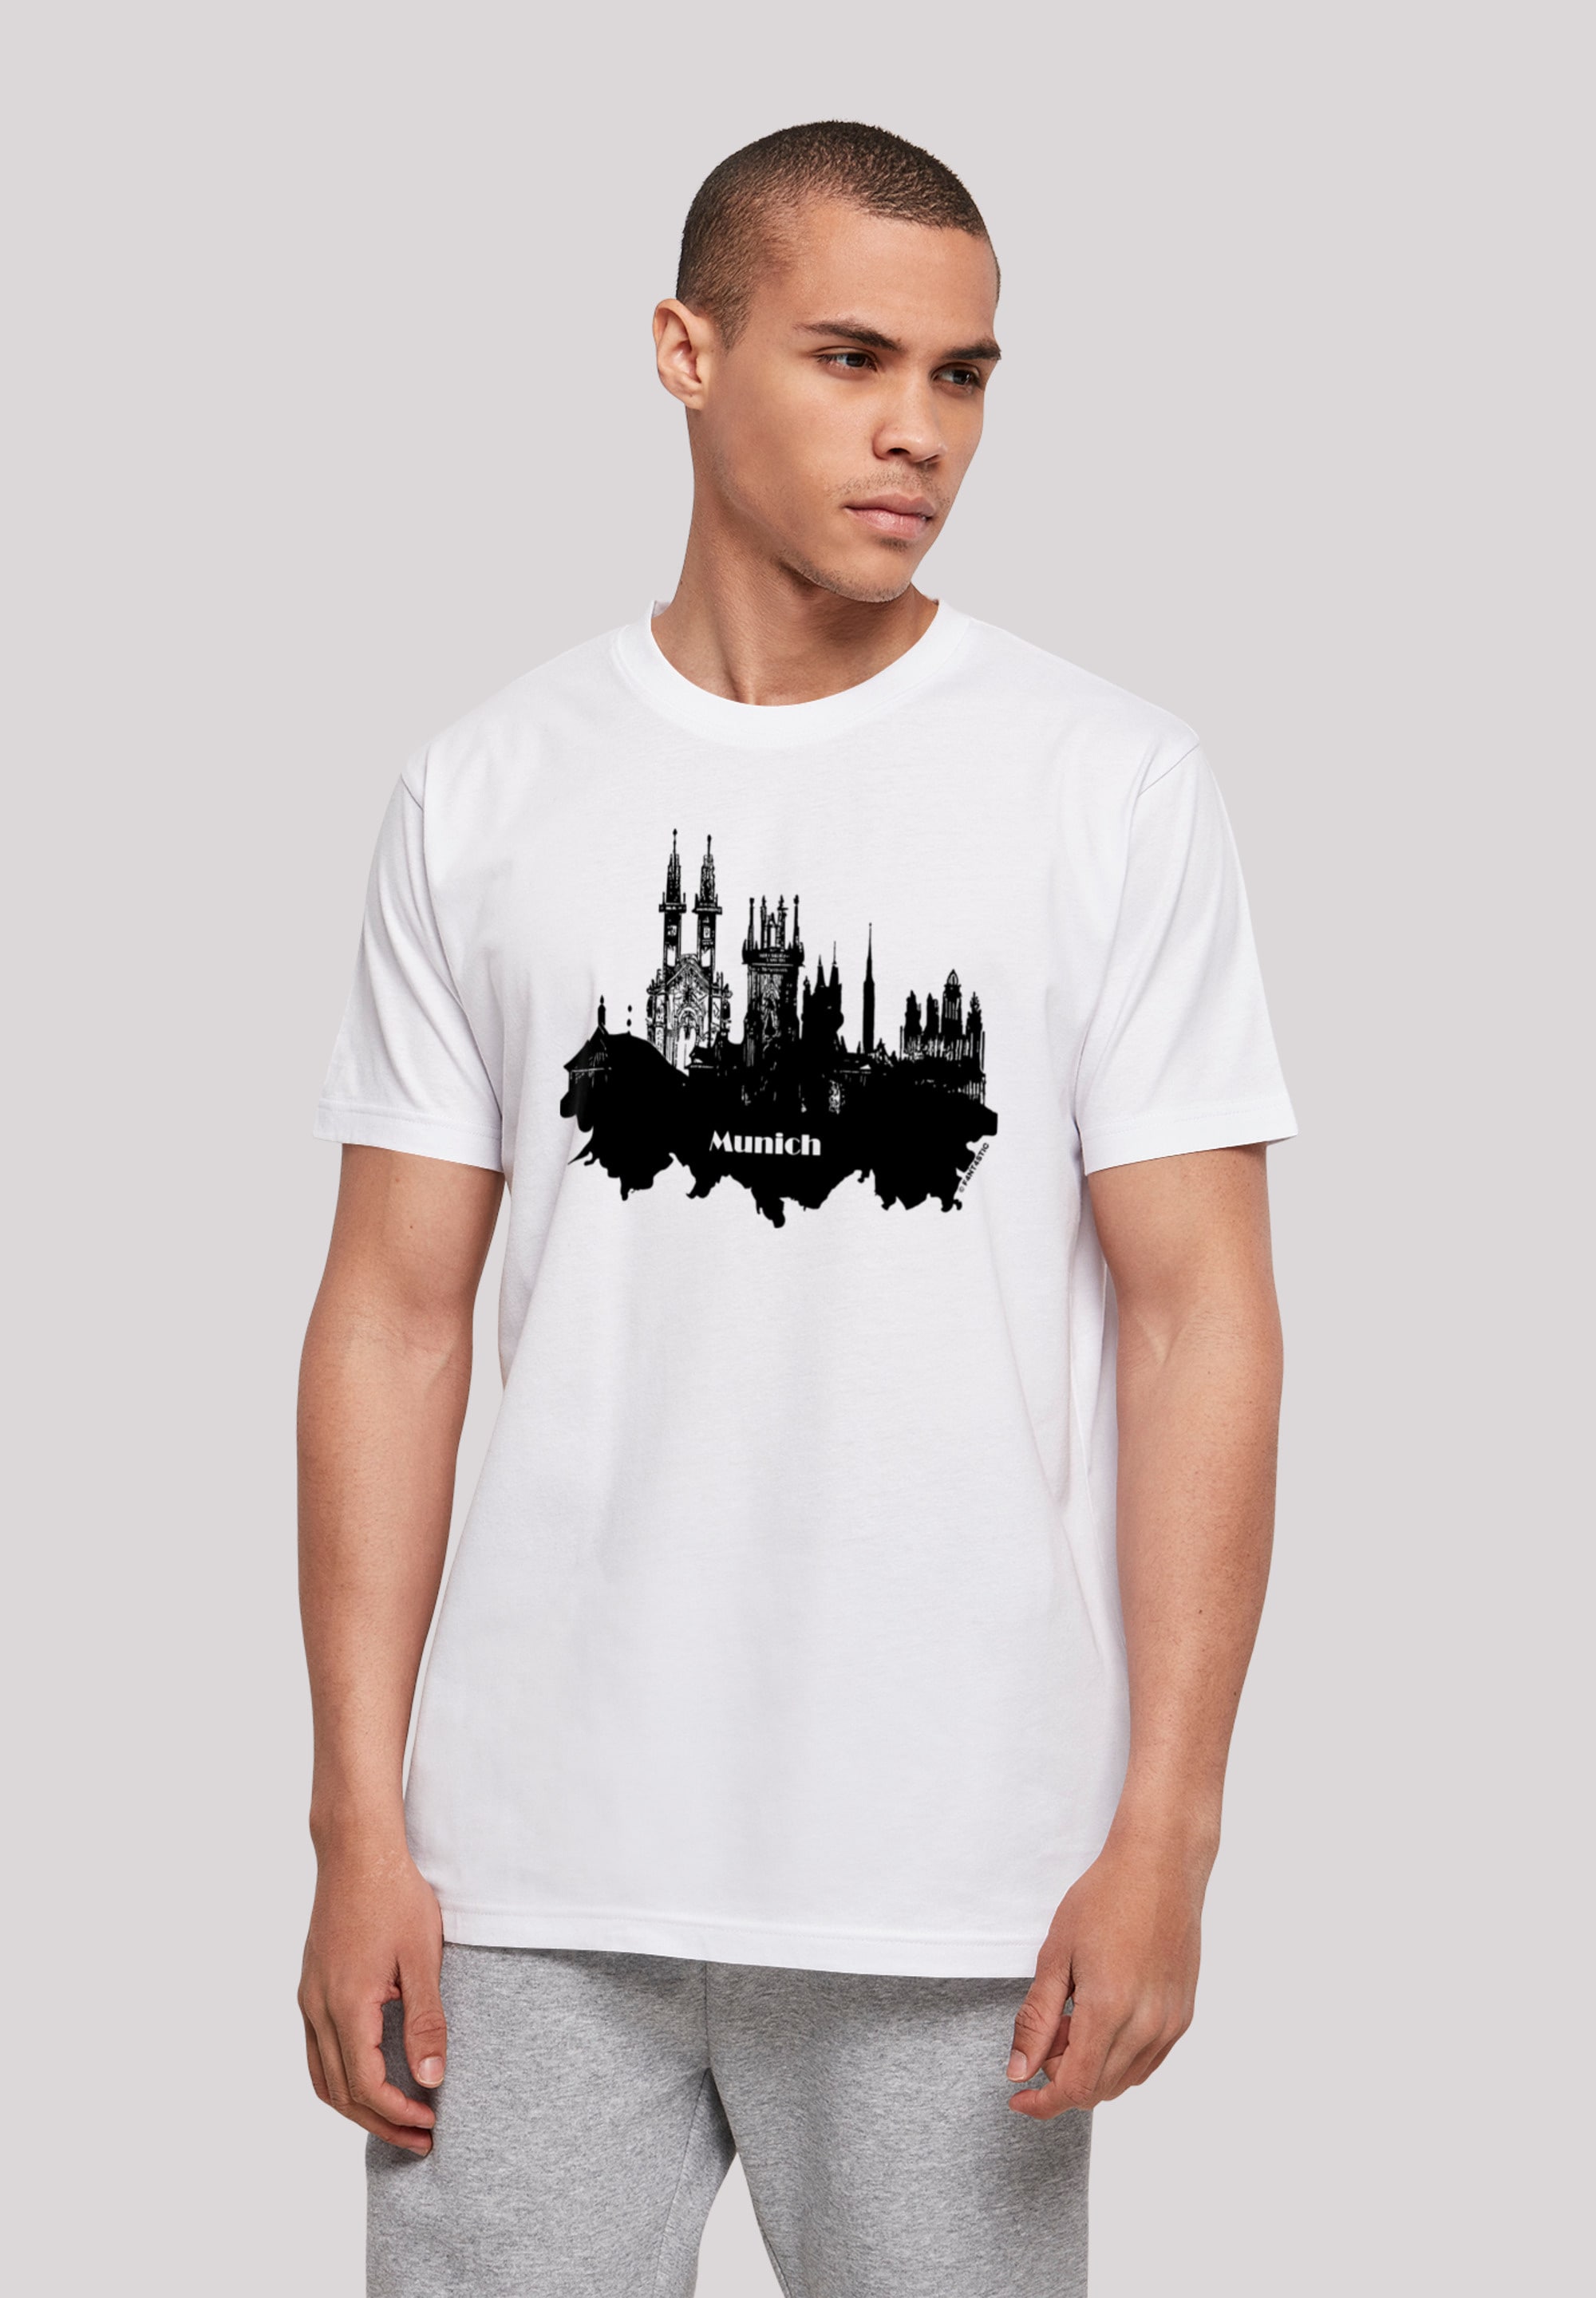 T-Shirt »Cities Collection - Munich skyline«, Print